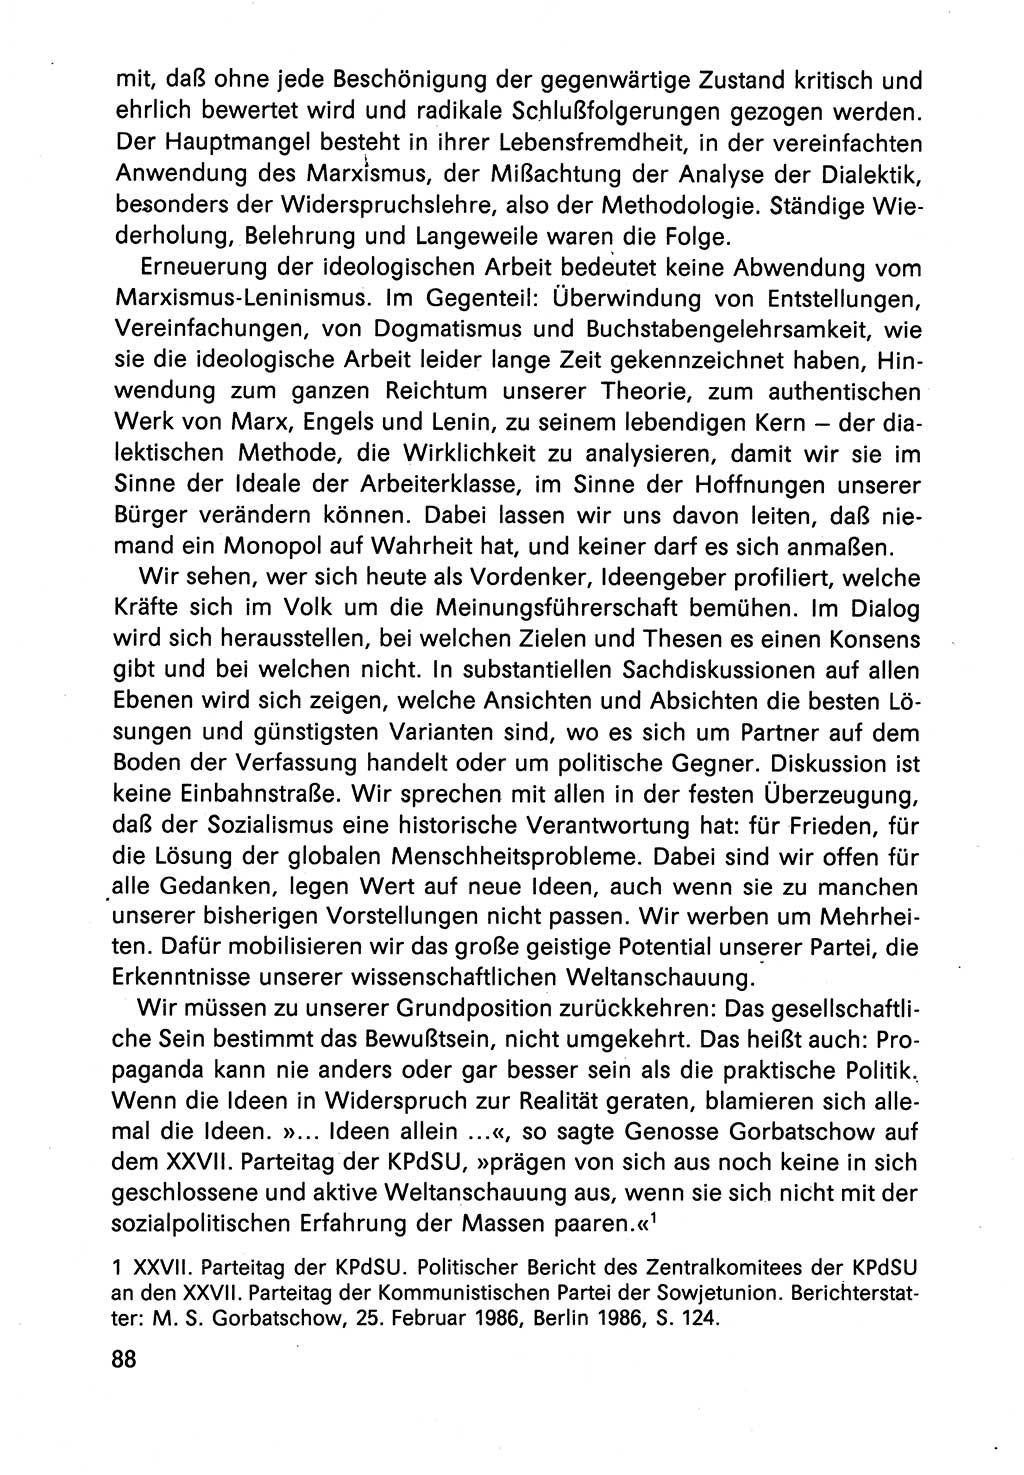 Diskussionsbeiträge, 10. Tagung des ZK (Zentralkomitee) der SED (Sozialistische Einheitspartei Deutschlands) [Deutsche Demokratische Republik (DDR)] 1989, Seite 88 (Disk.-Beitr. 10. Tg. ZK SED DDR 1989, S. 88)